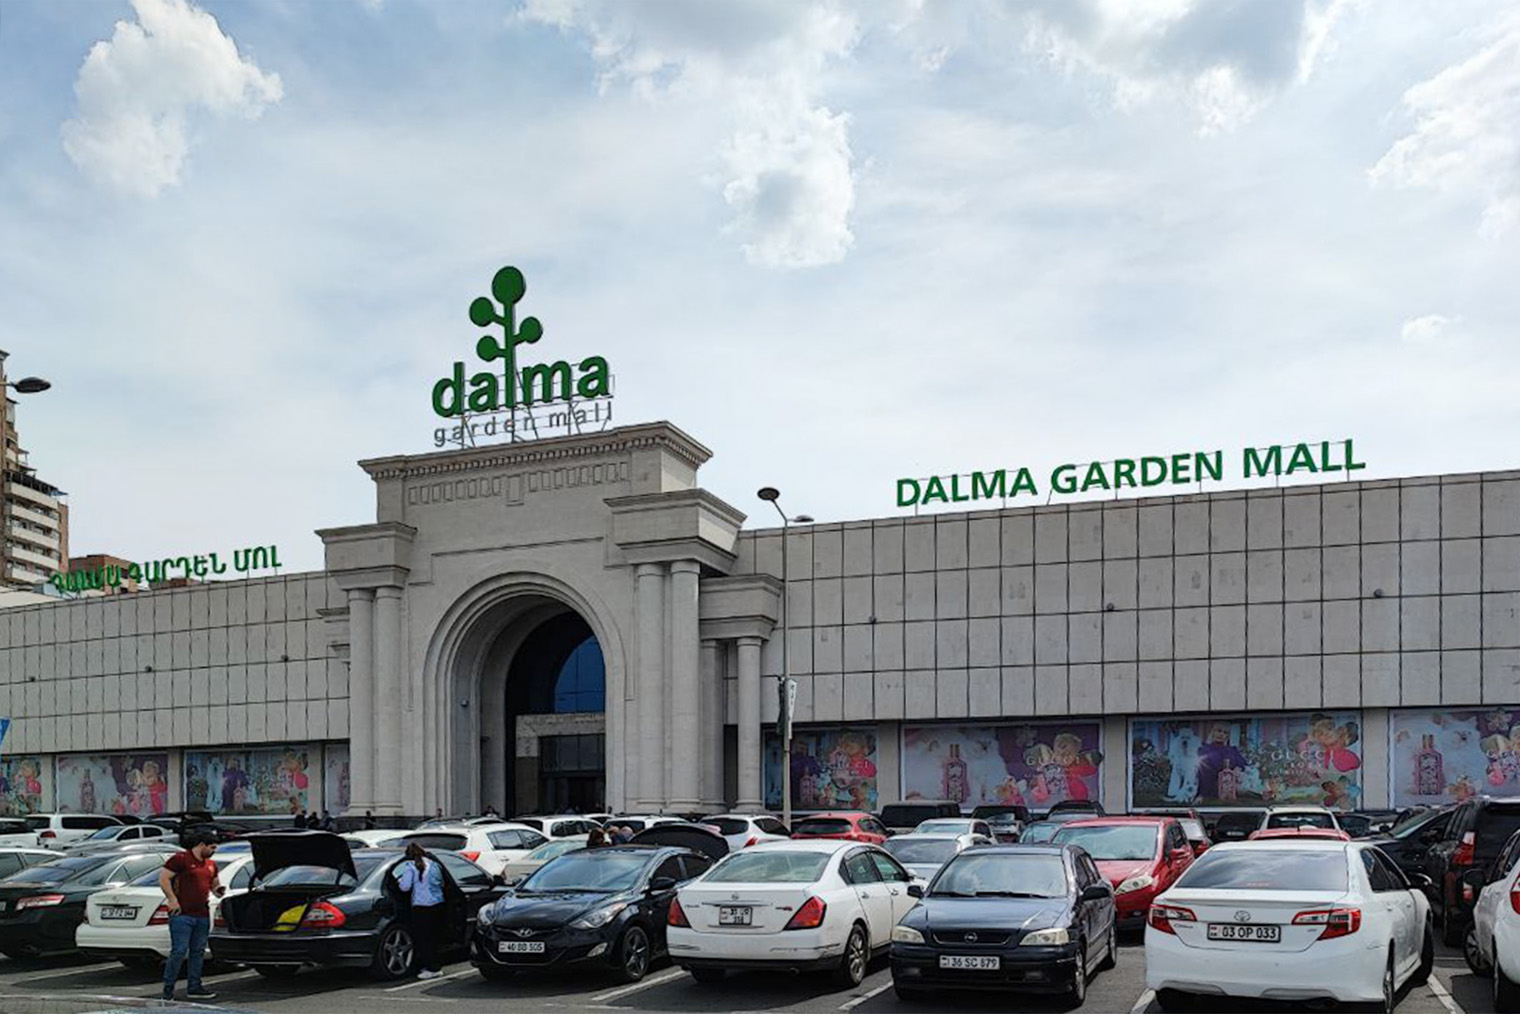 «Далма-гарден-молл» — один из крупнейших торговых центров Еревана. За покупками прихожу сюда